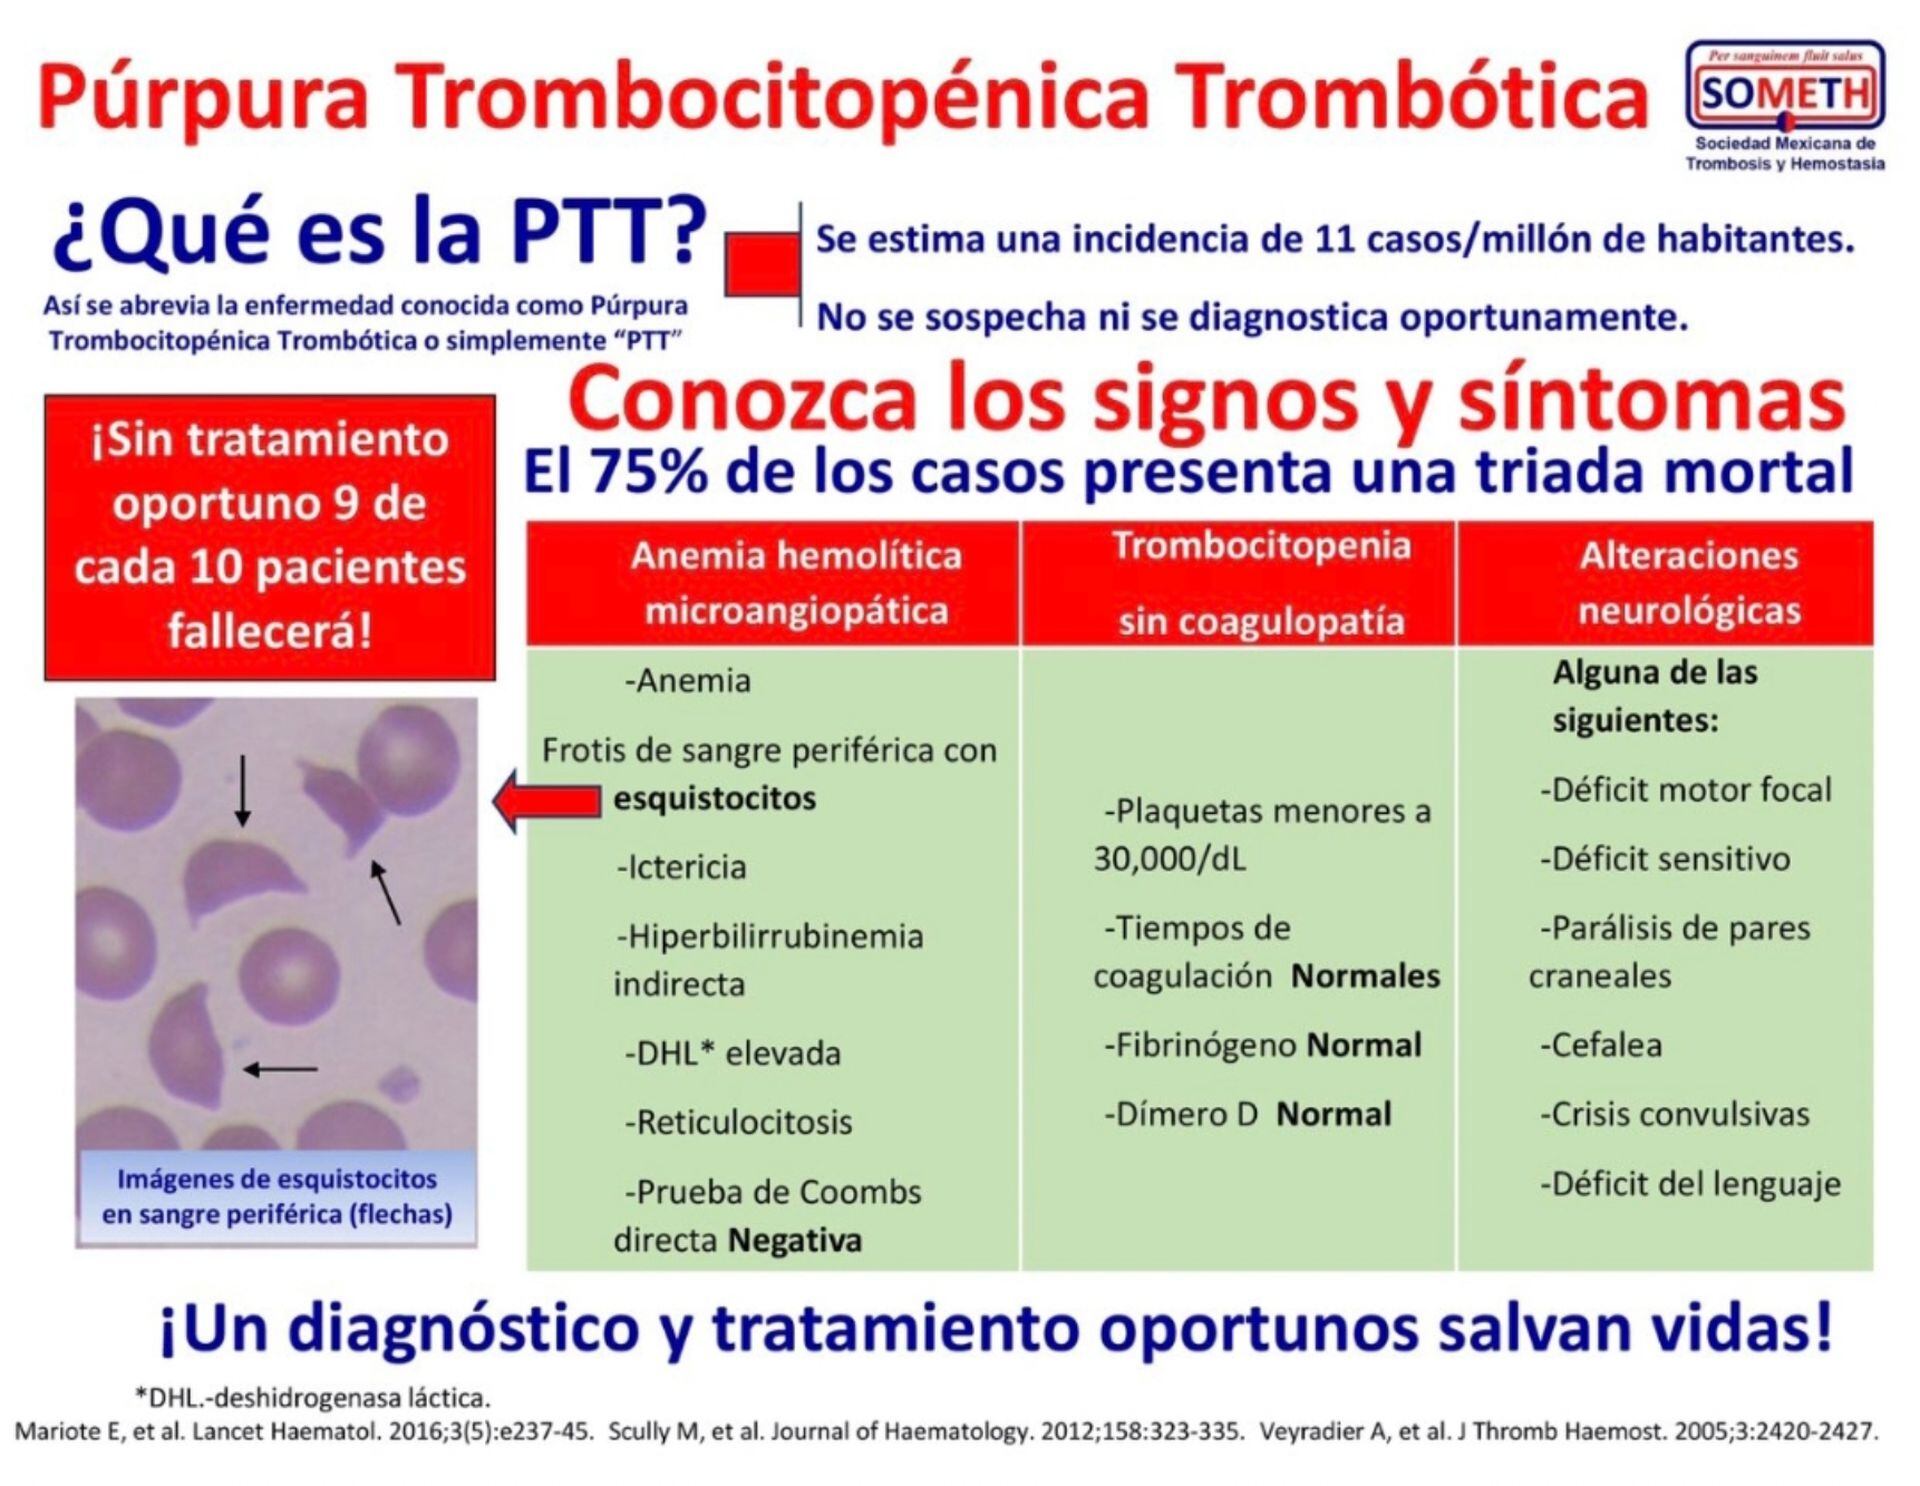 La Púrpura Trombocitopénica Trombótica es una enfermedad hematológica muy compleja.